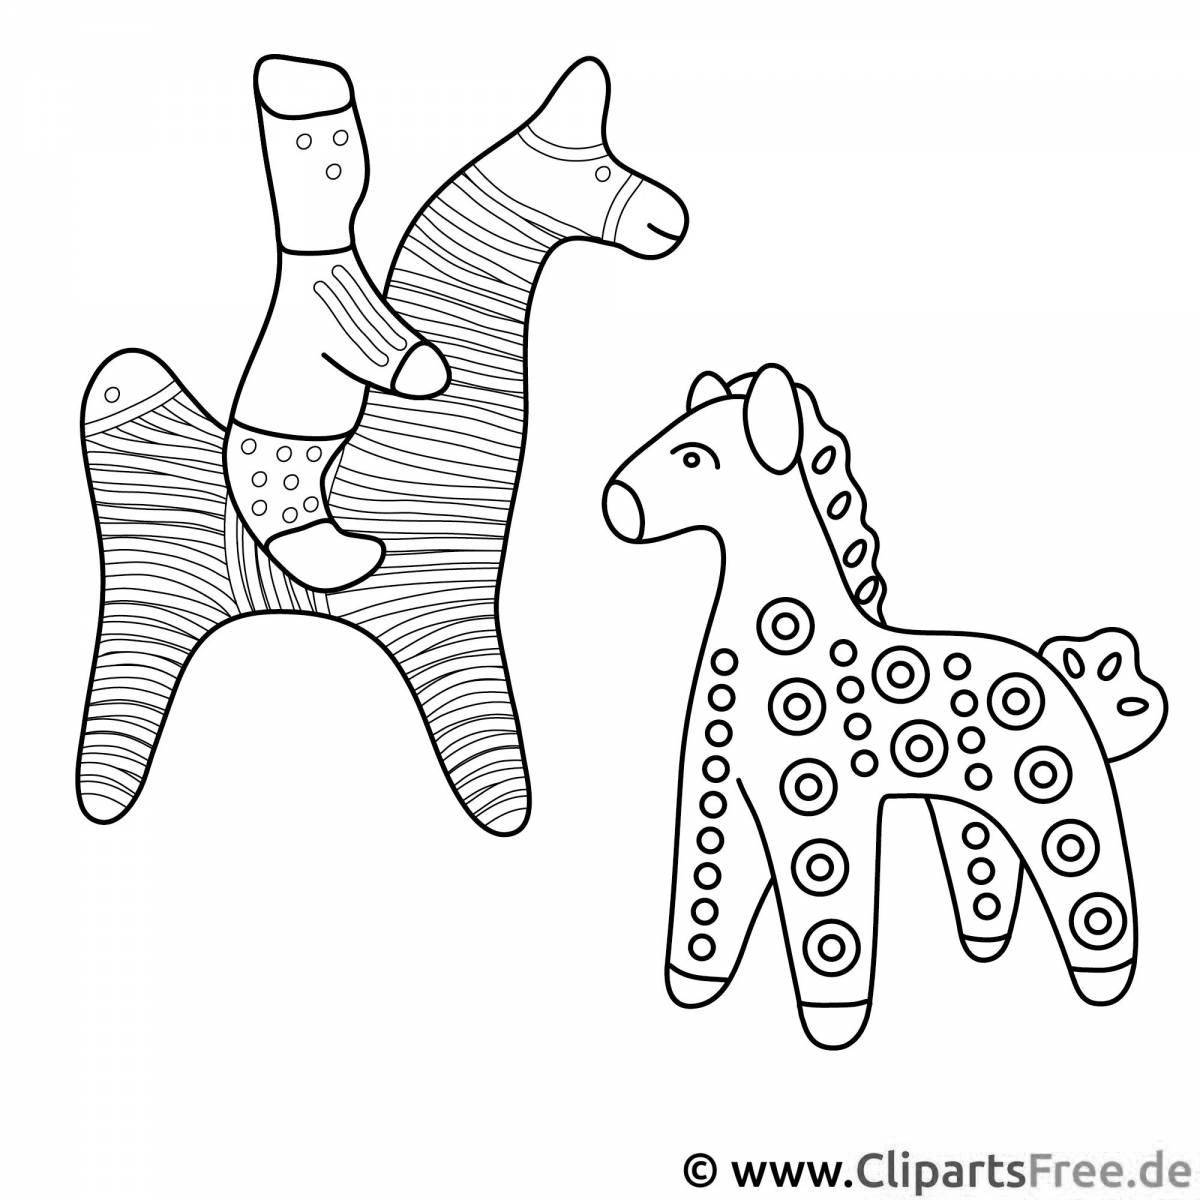 Violent coloring horse from kargopol